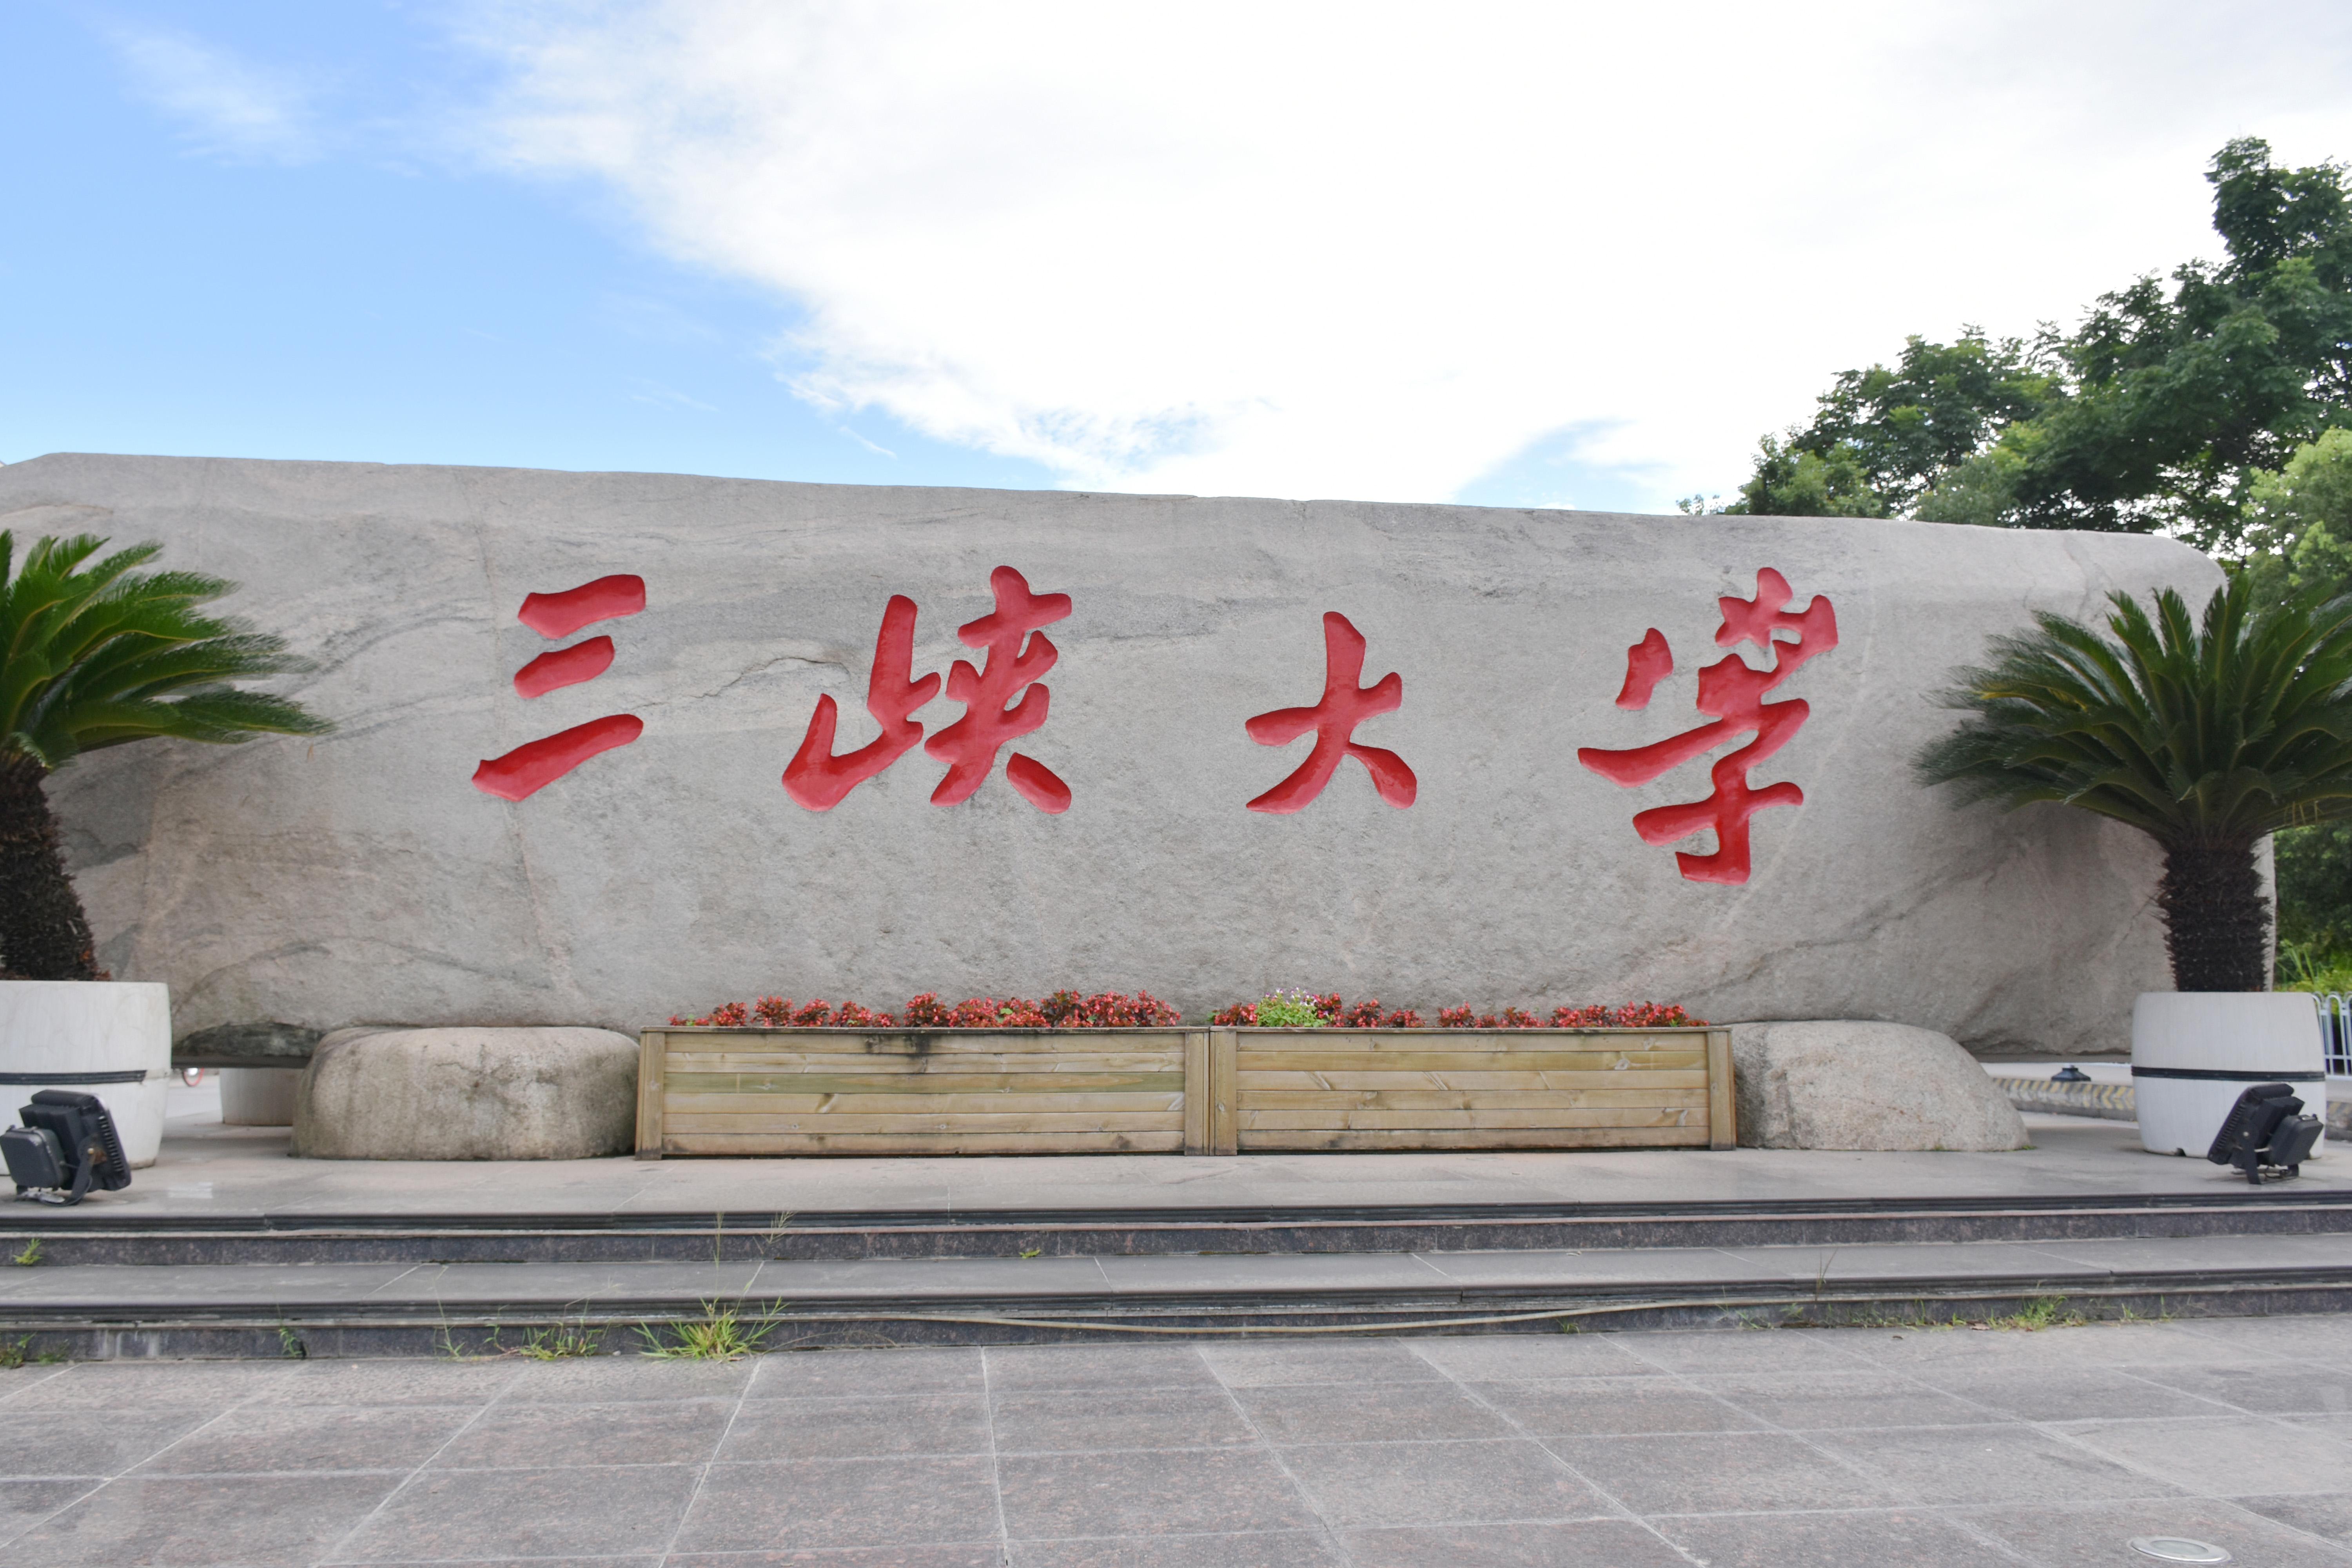 重庆三峡学院 大门图片